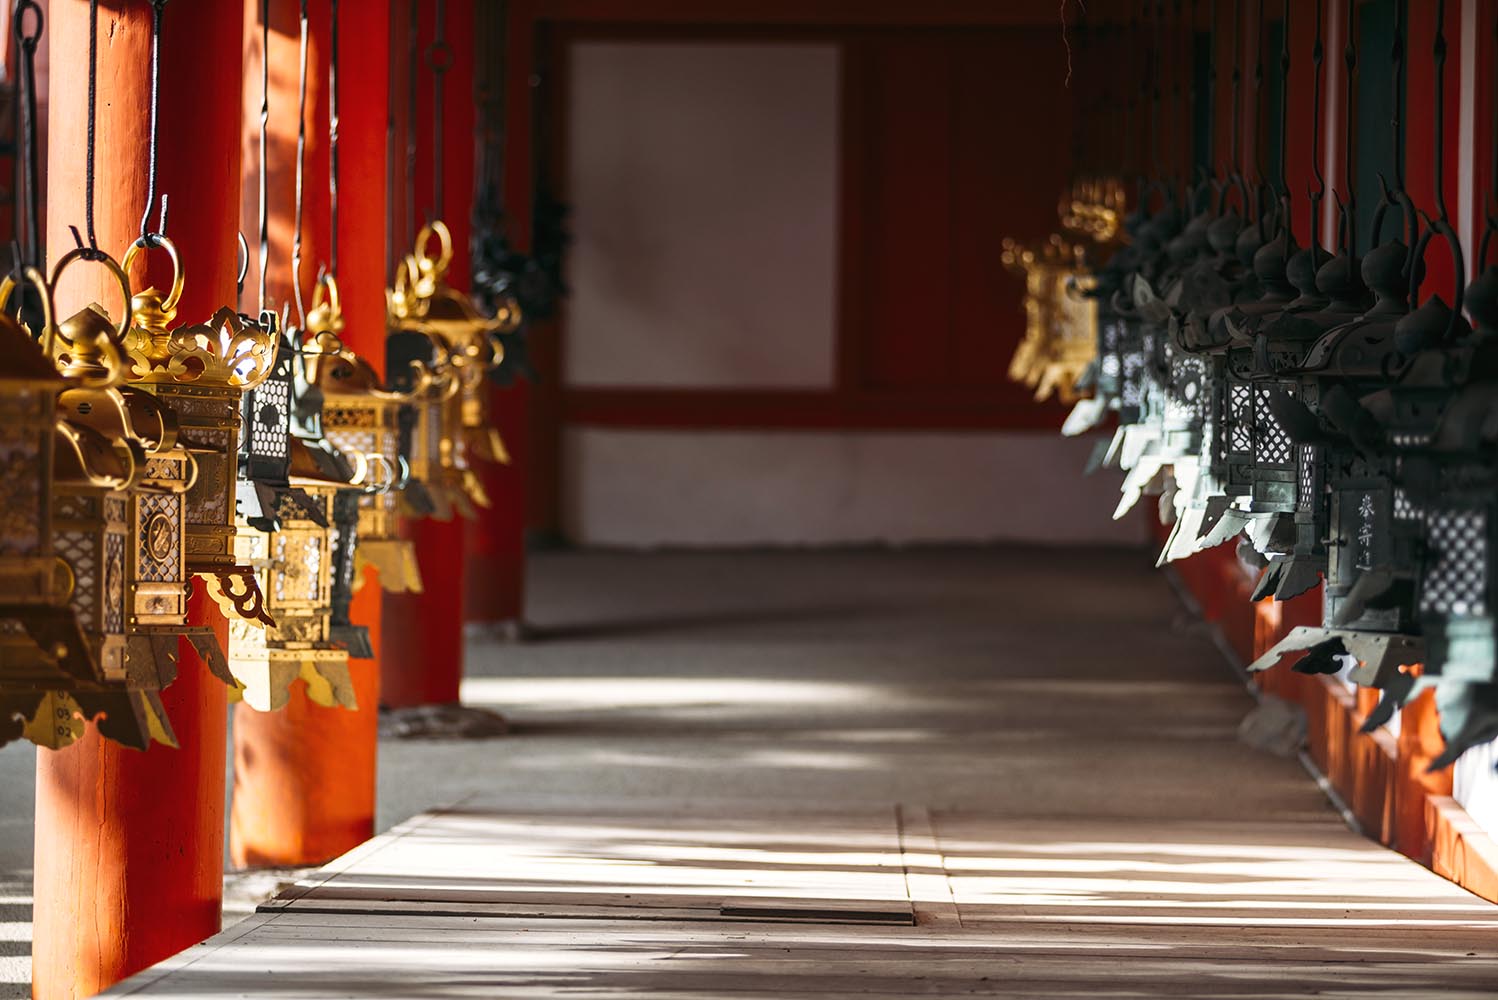 Japan, Nara, Kasuga Grand Shrine, Lanterns, Shadows